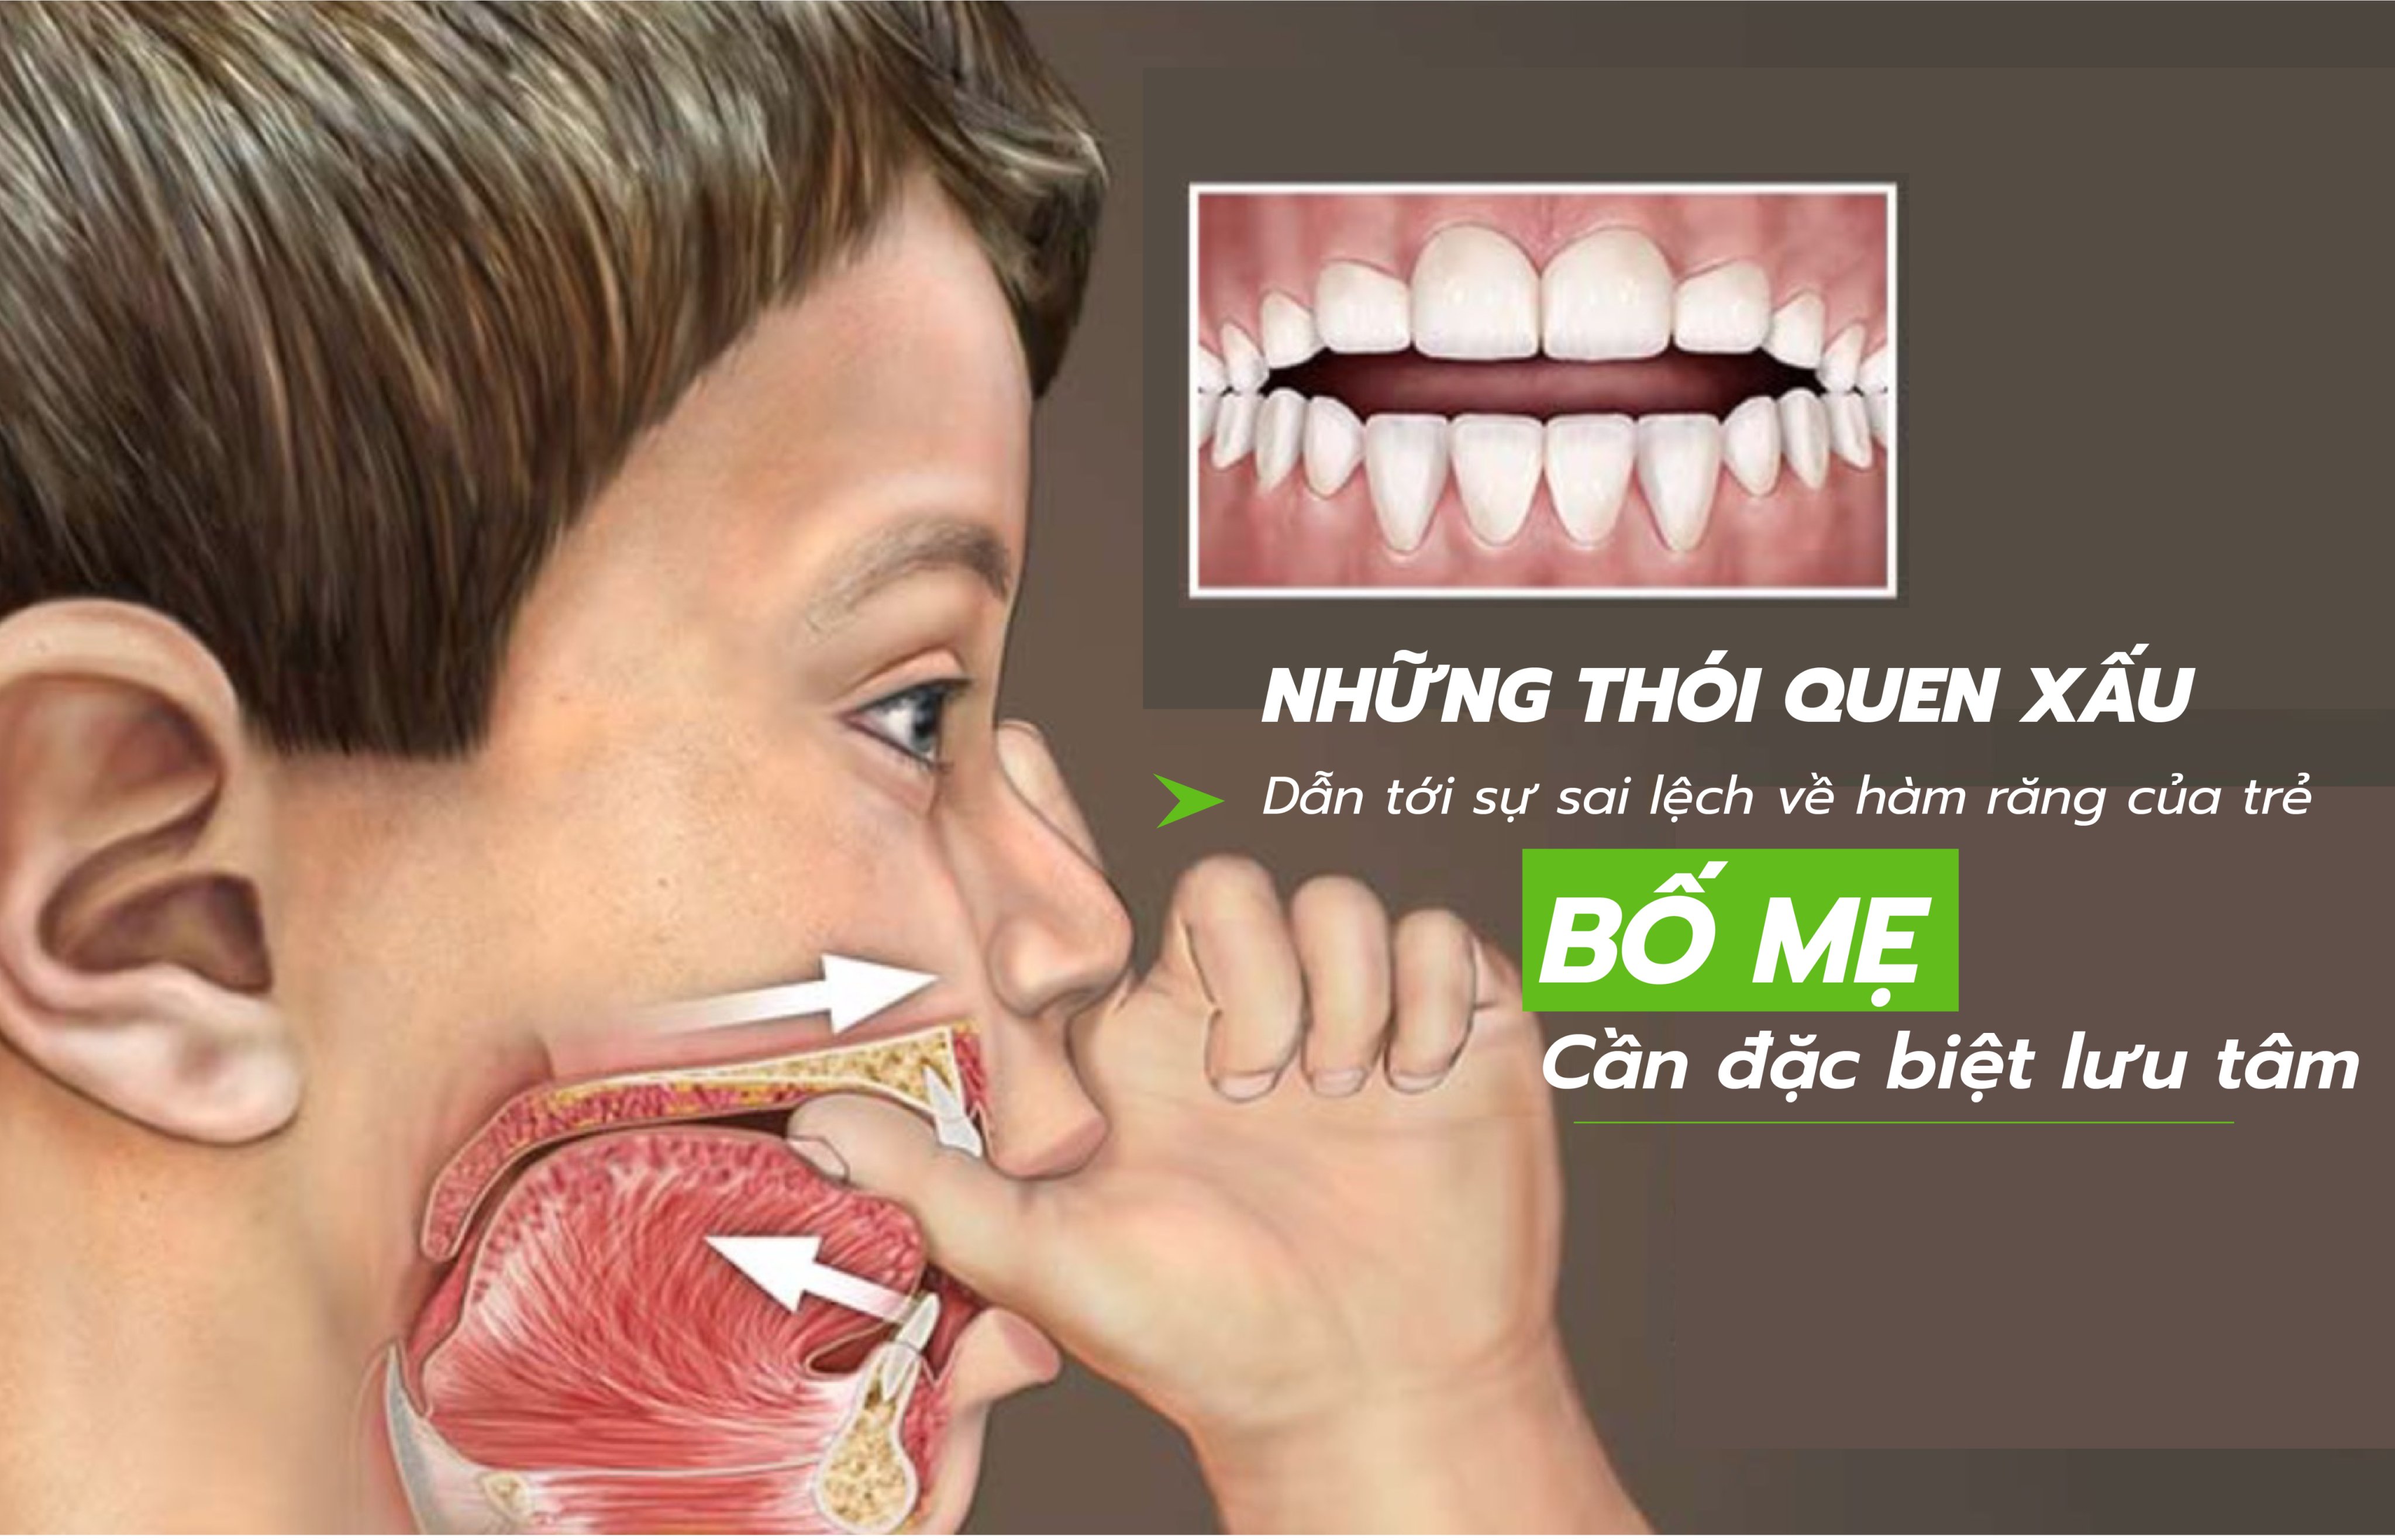 Những thói quen xấu dẫn đến sự sai lệch về hàm răng của trẻ, bố mẹ cần đặc biệt lưu tâm - Nha Khoa Thùy Anh Thái Nguyên